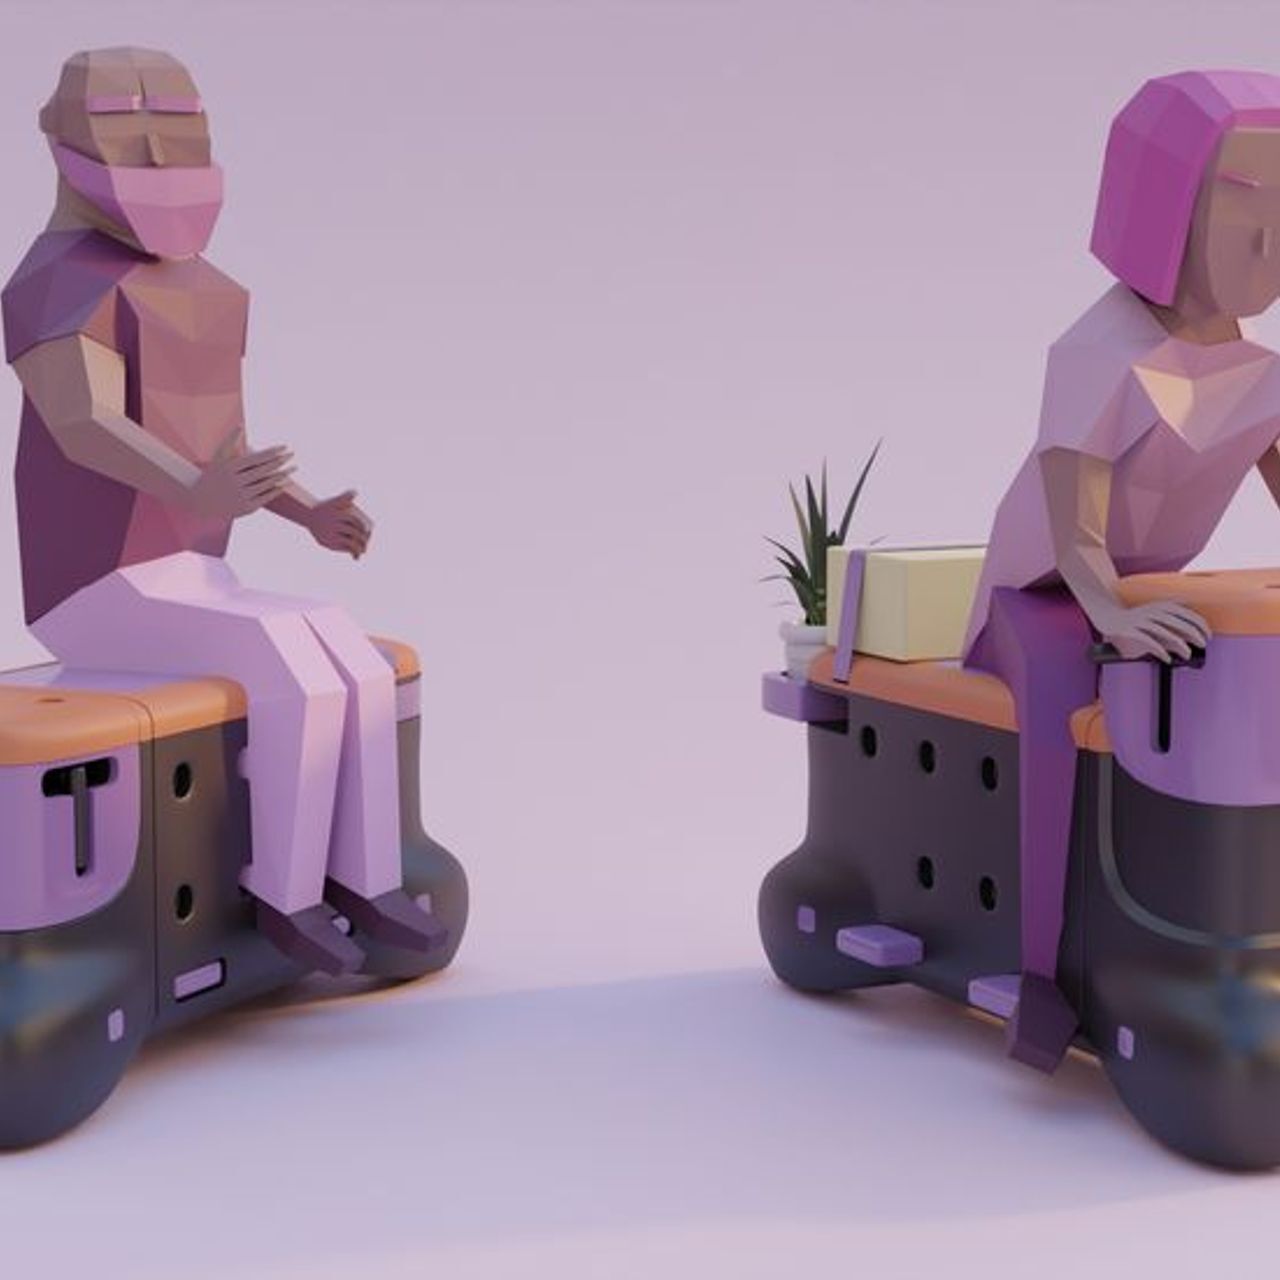 'TOD' è la panchina-scooter ideata dagli studenti di design Corentin Janel e Guillaume Innocenti